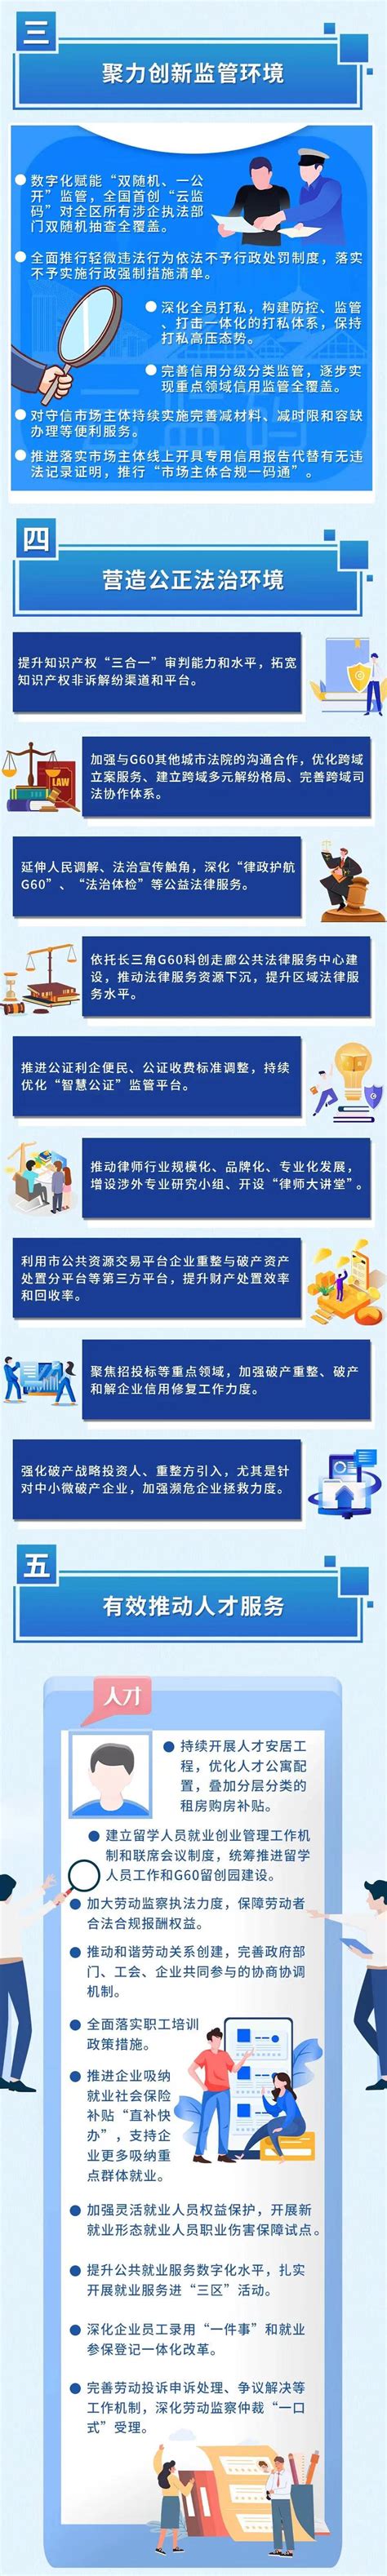 关于G60科创走廊下半程的思考：战略东进构建“双策源”、松江打造资源配置“枢纽”-上海中创产业创新研究院